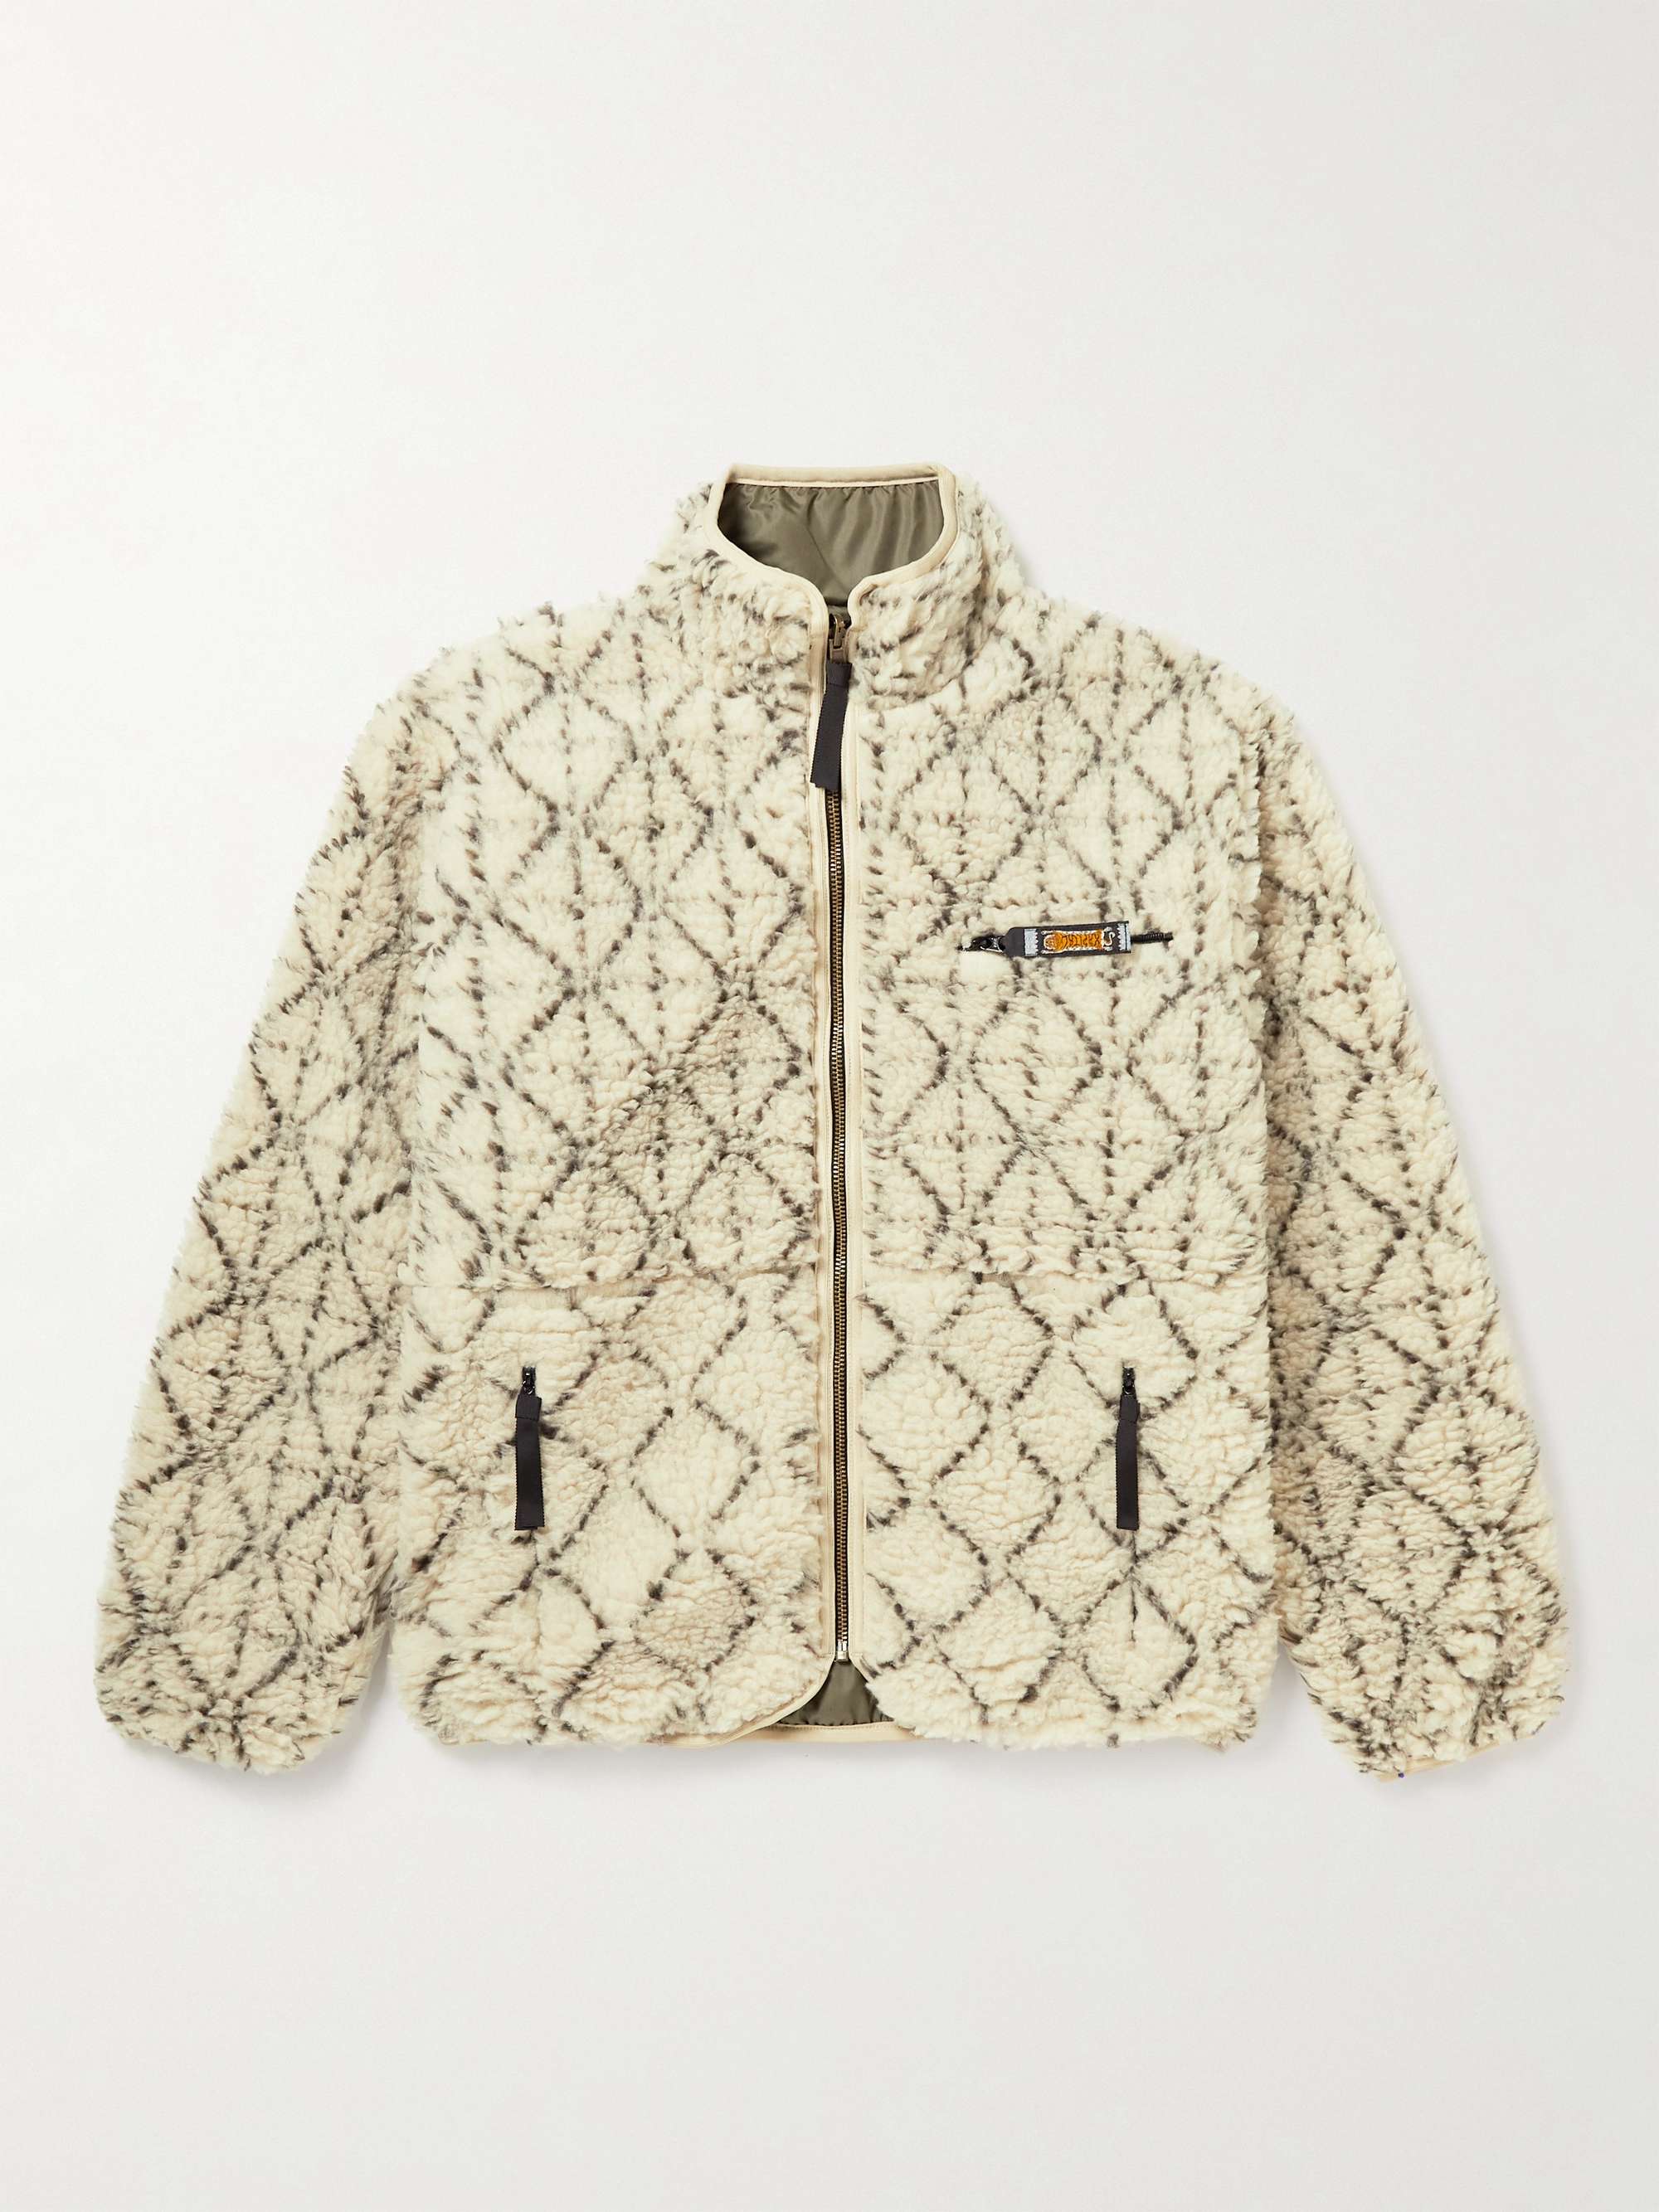 KAPITAL Do-Gi Boa Reversible Printed Fleece and Shell Bomber Jacket